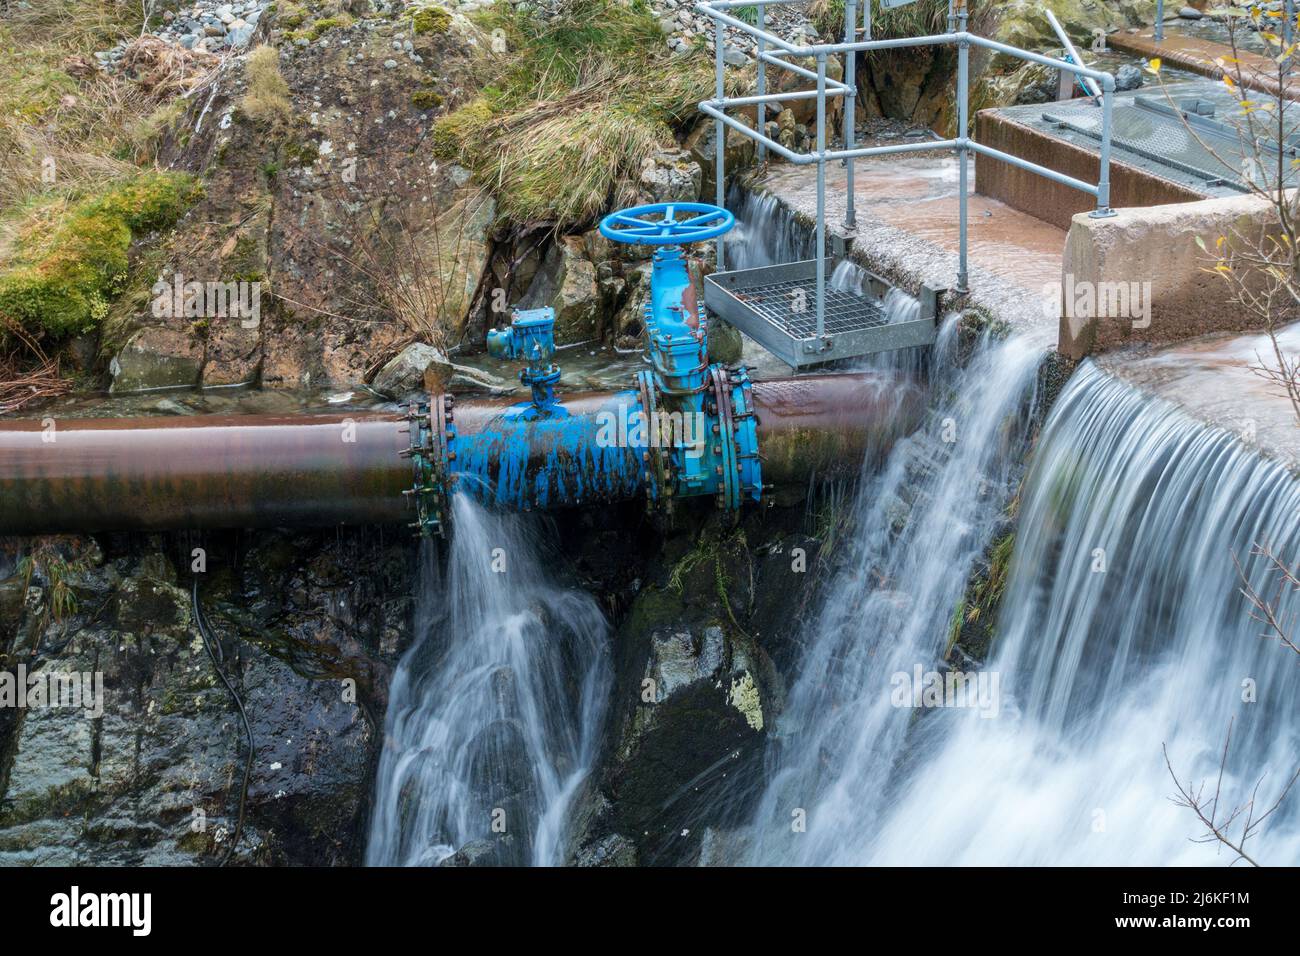 Undichte Wasserleitung und Absperrschieber im Wassereinlass des Wasserkraftwerks, Glenridding, Cumbria, England, Großbritannien Stockfoto